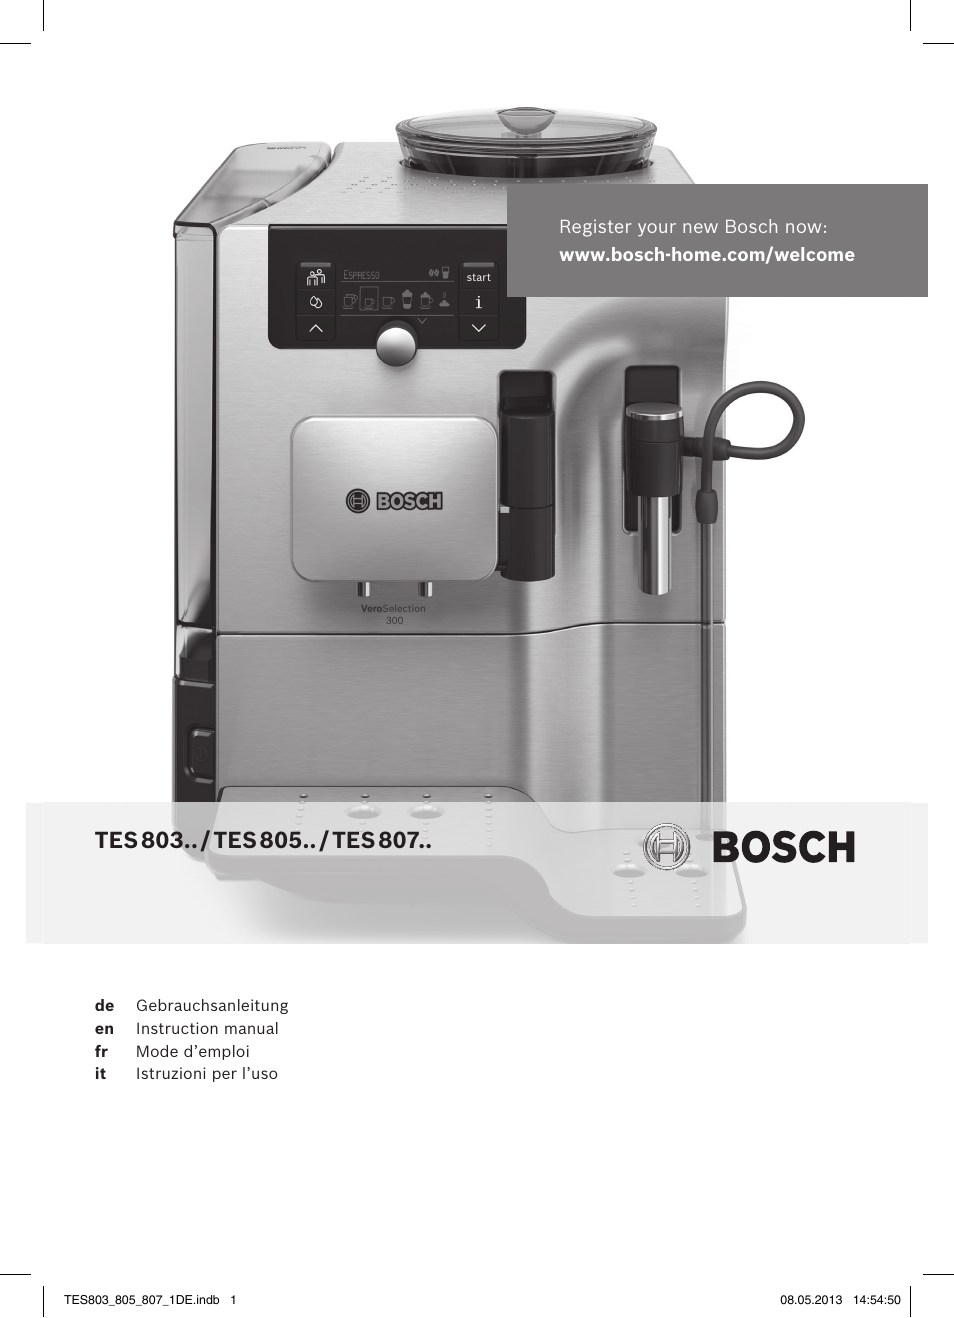 Bosch TES80751DE VeroSelection 700 Kaffeevollautomat Edelstahl User Manual  | 116 pages | Original mode | Also for: TES80359DE VeroSelection 300  Kaffeevollautomat Front Edelstahl Gehäuse hochglanz anthrazit, TES80551DE  VeroSelection 500 ...